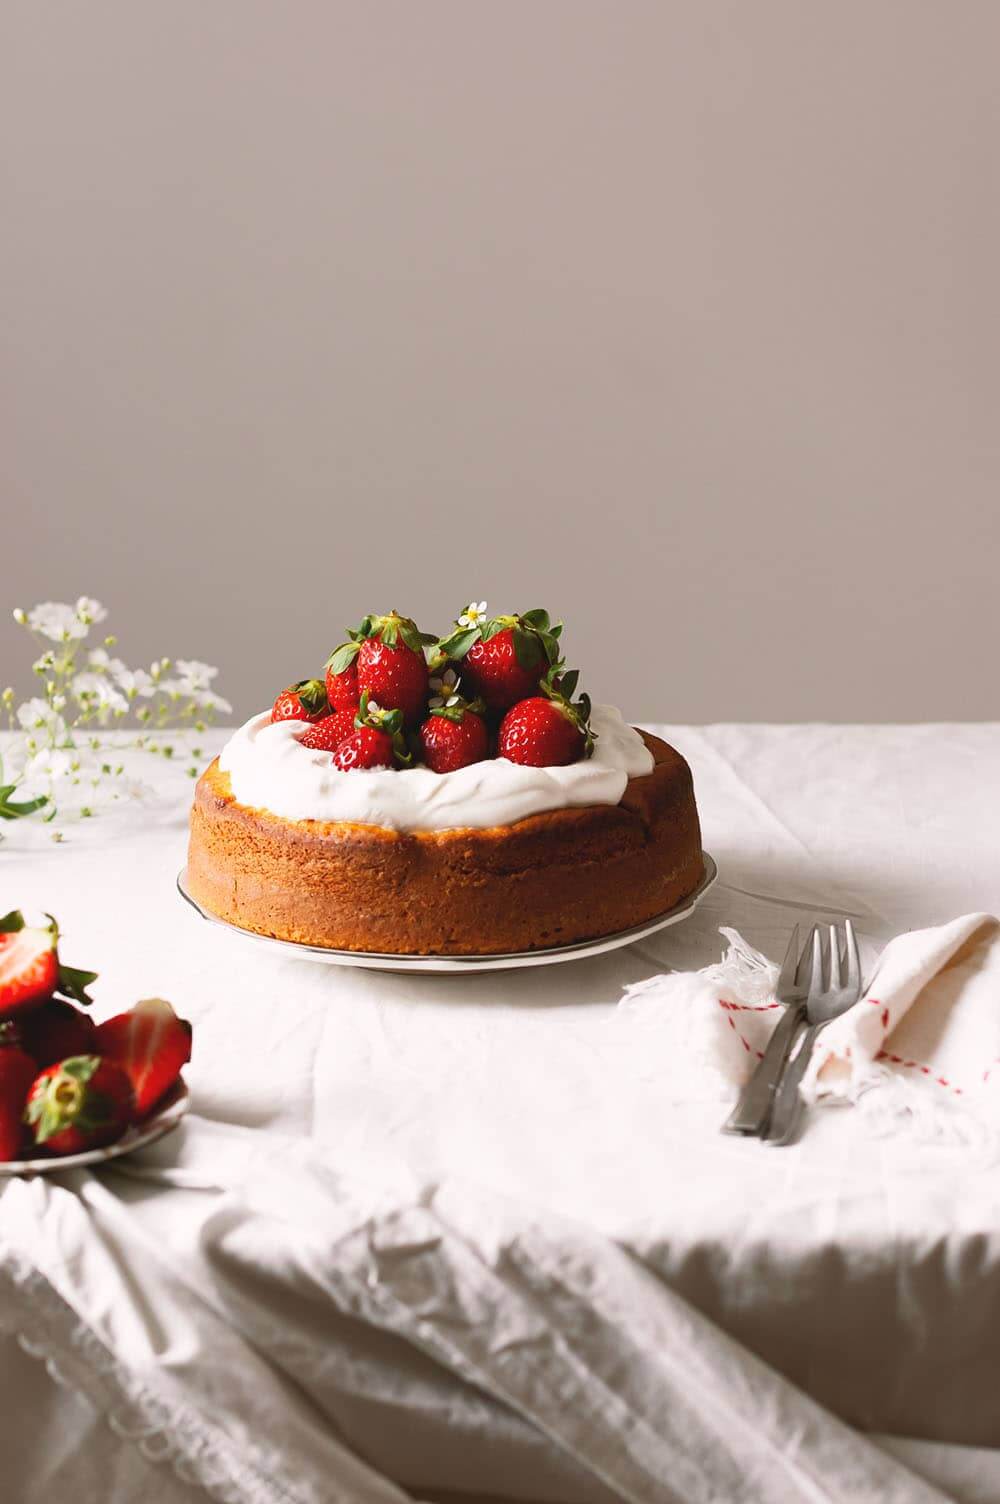 En una mesa hay un plato blanco y en el plato está el bizcocho de fresas y yogur decoradas con nata montada y fresas.